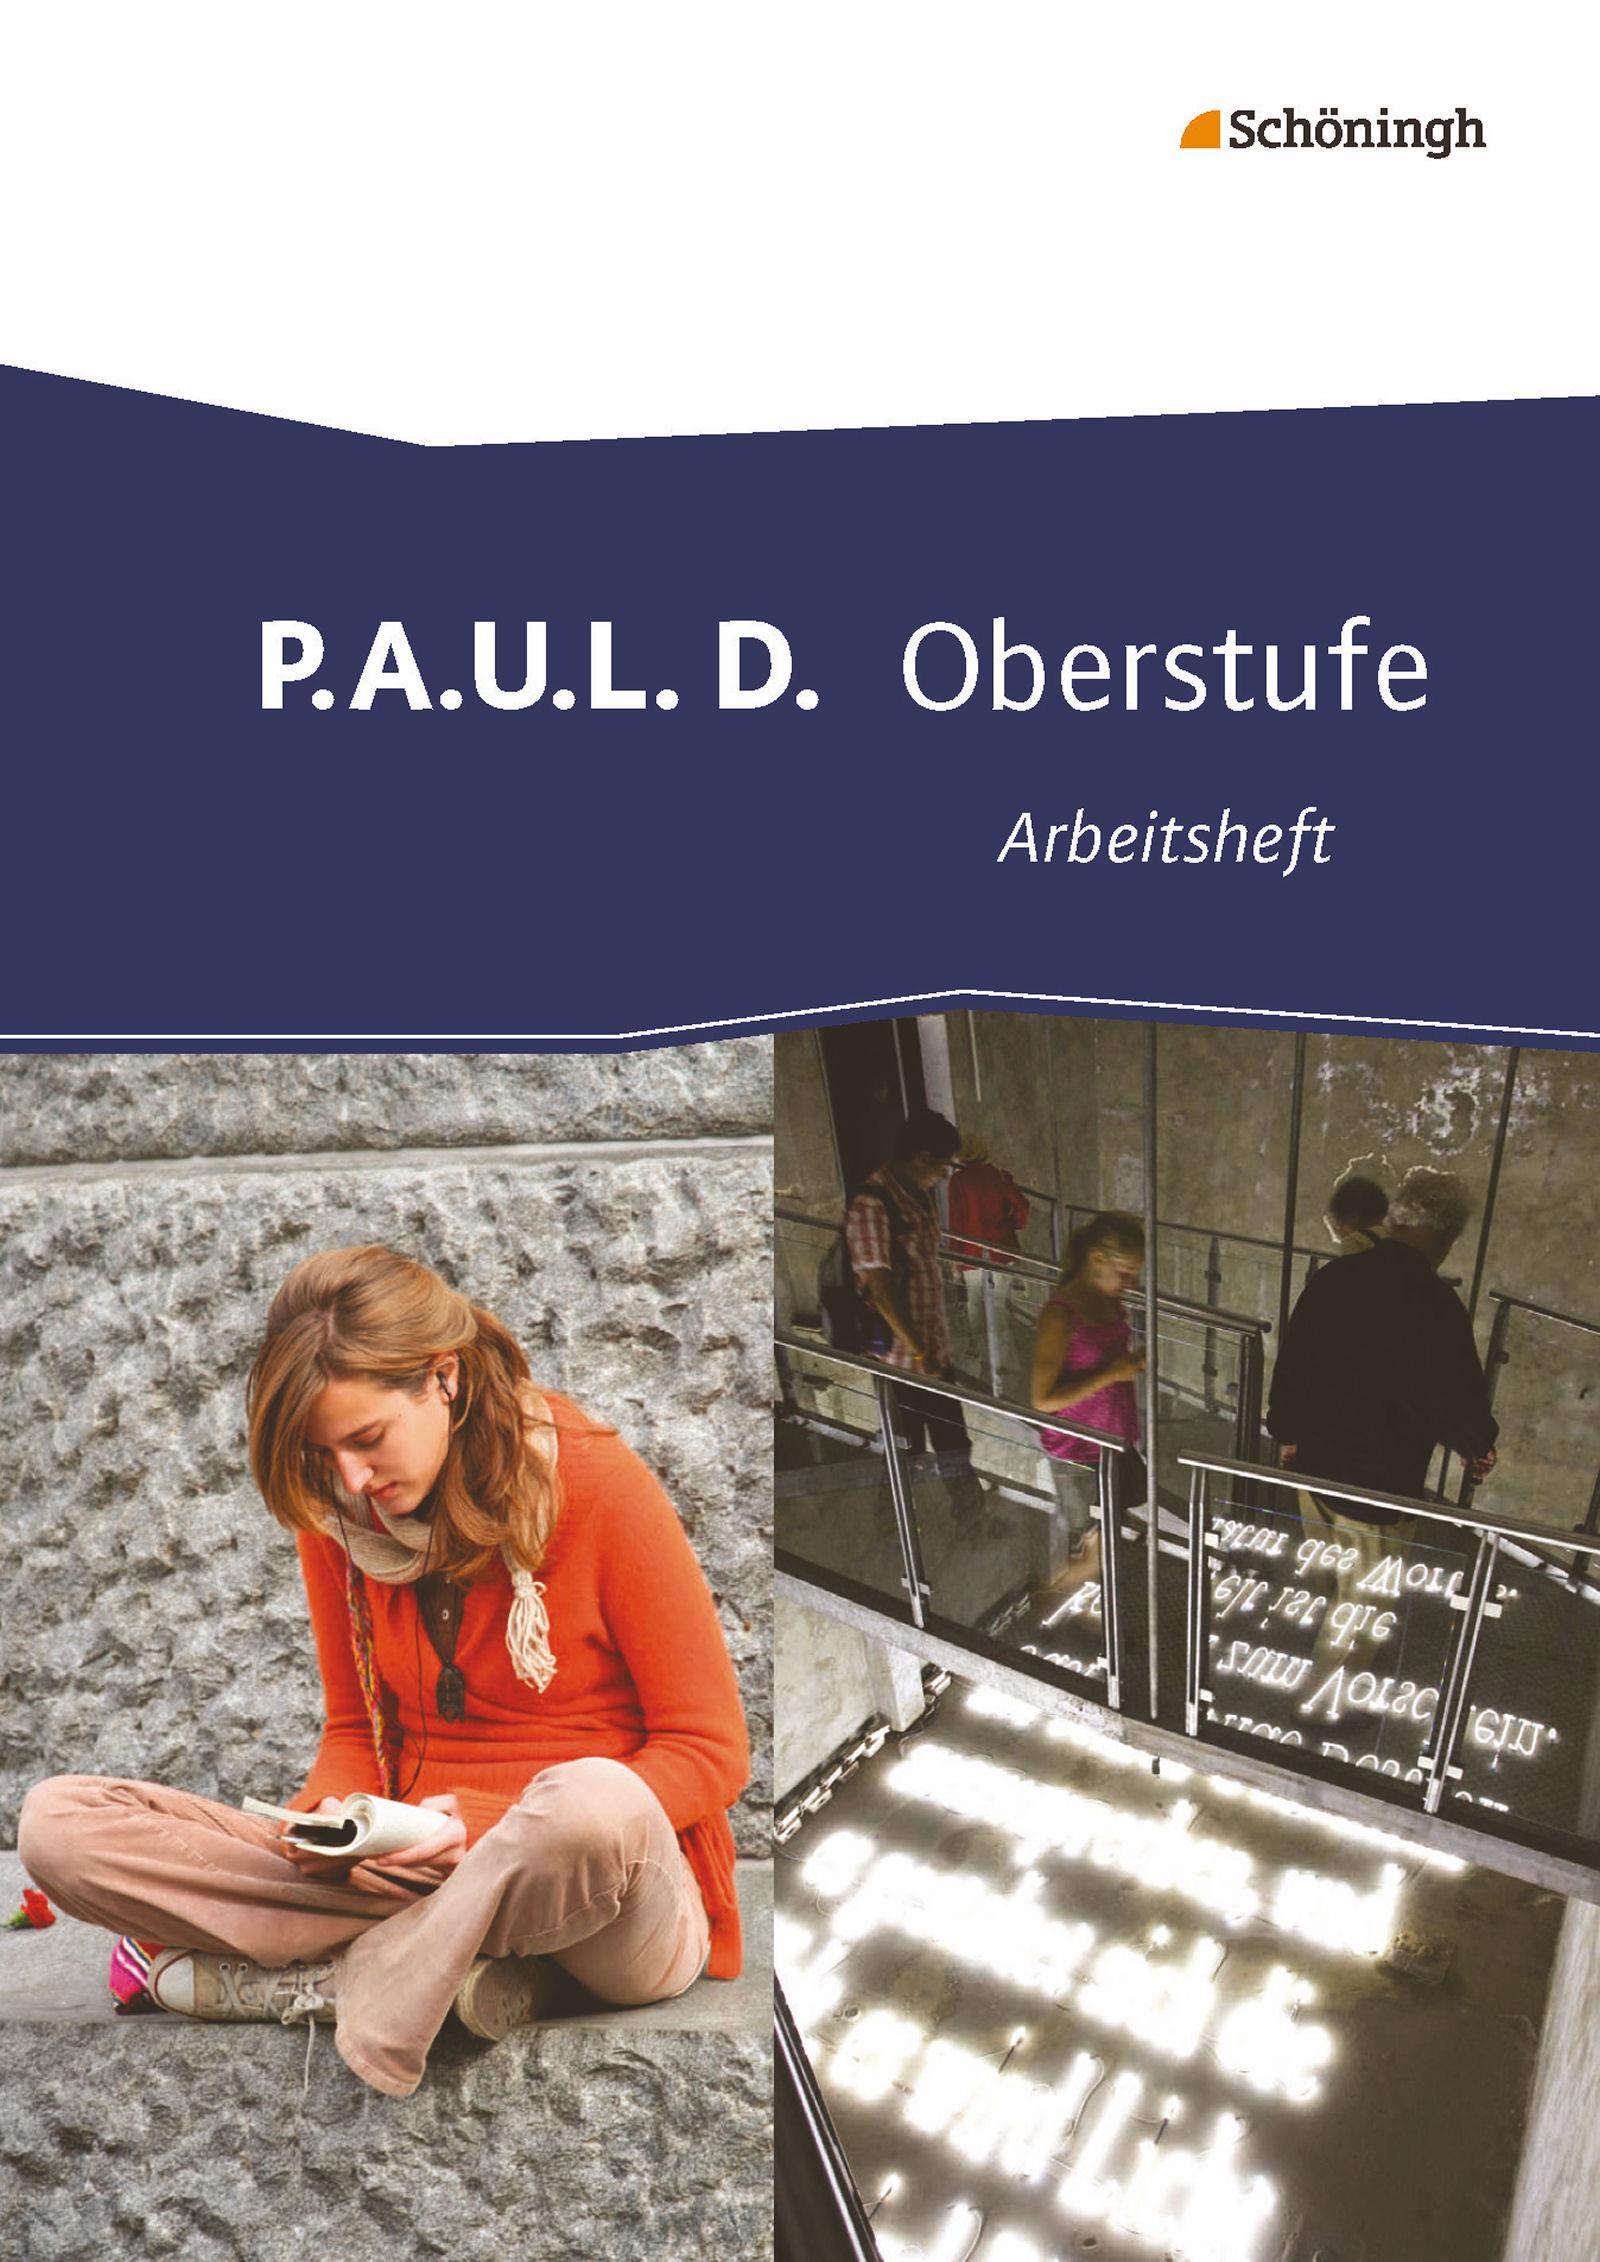 P.A.U.L. D. (Paul). Arbeitsheft. Persönliches Arbeits- und Lesebuch - Oberstufe